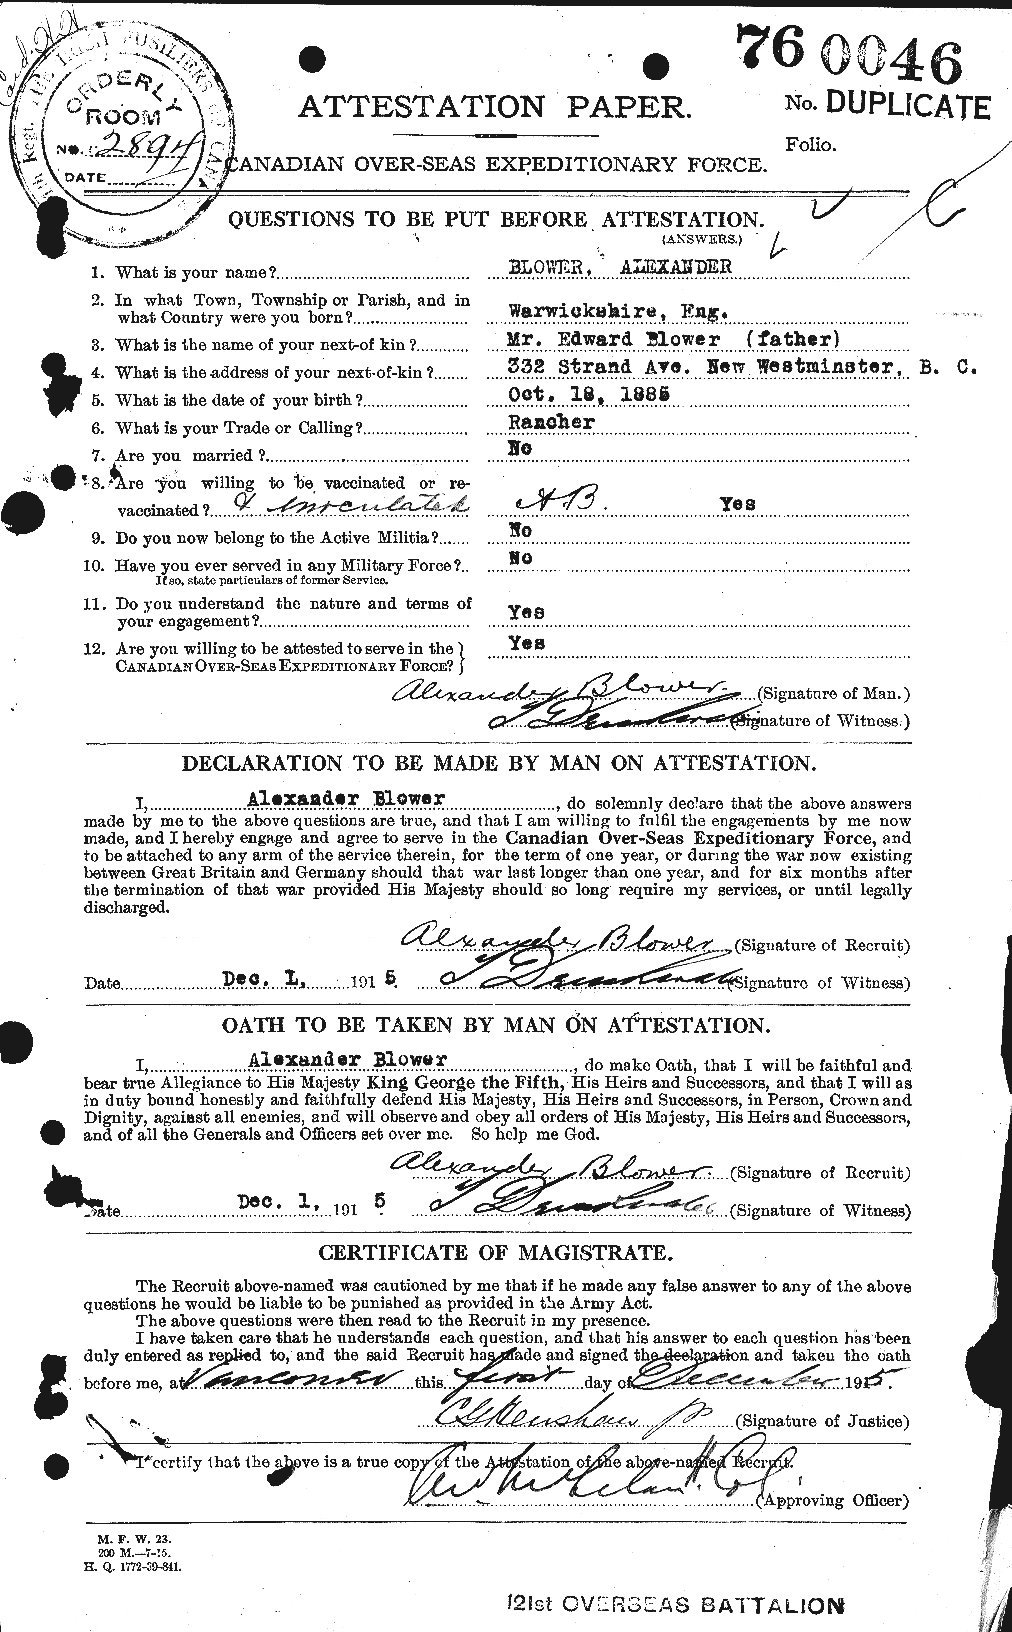 Dossiers du Personnel de la Première Guerre mondiale - CEC 247431a